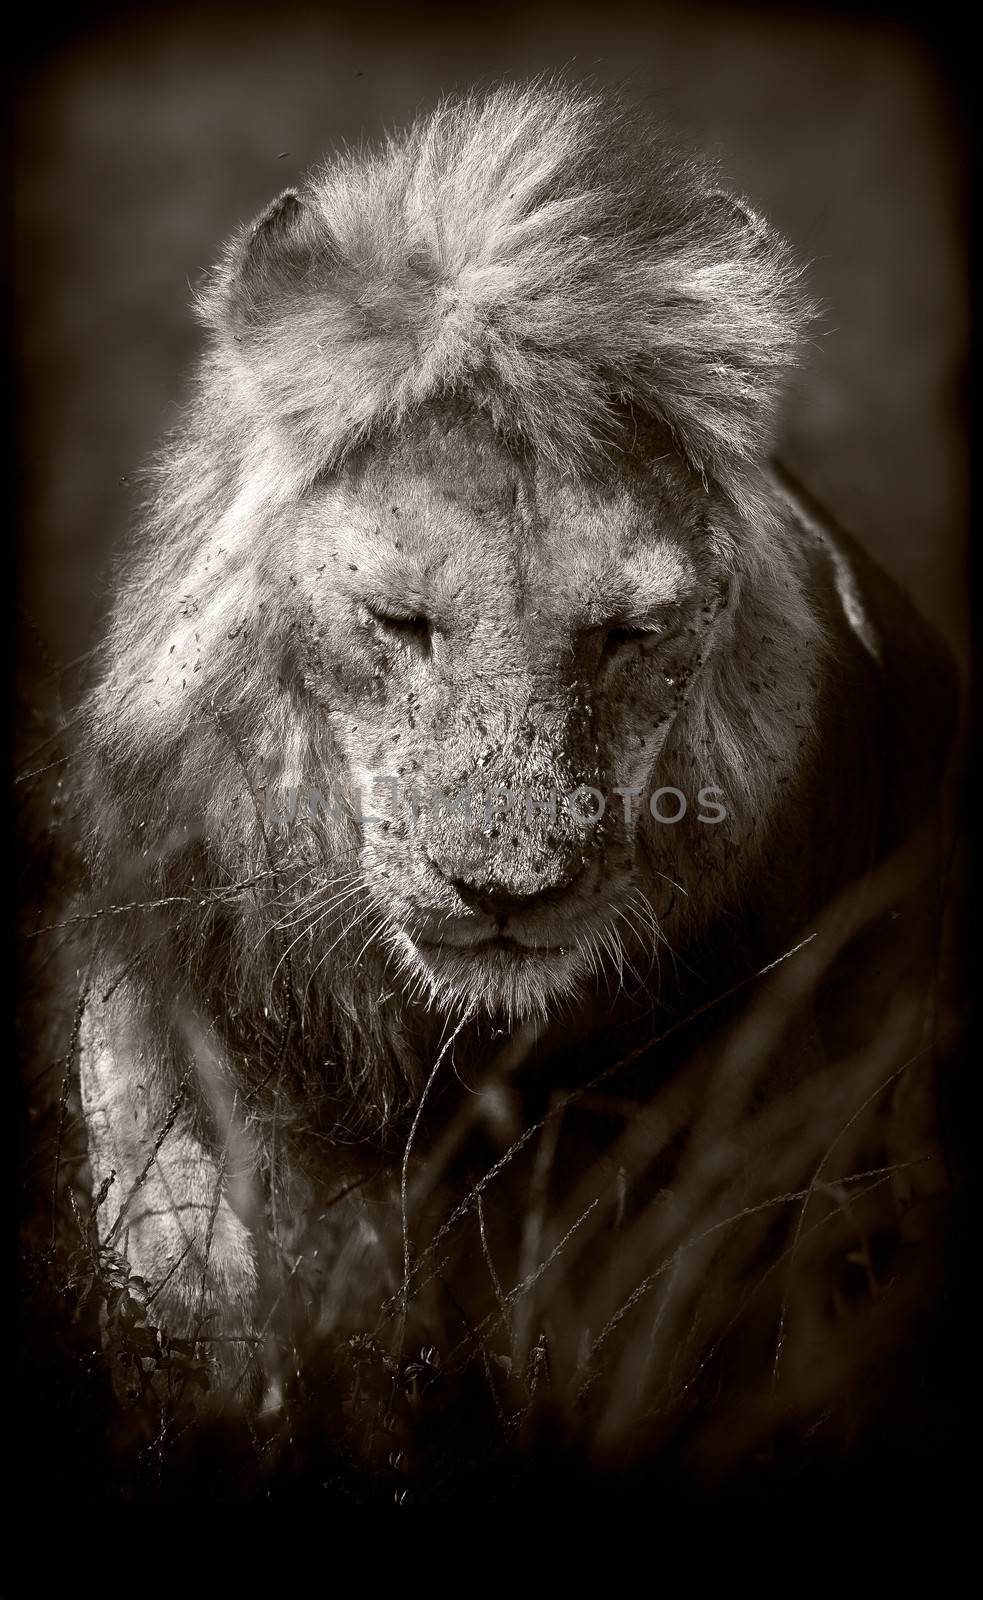 Lion by donvanstaden